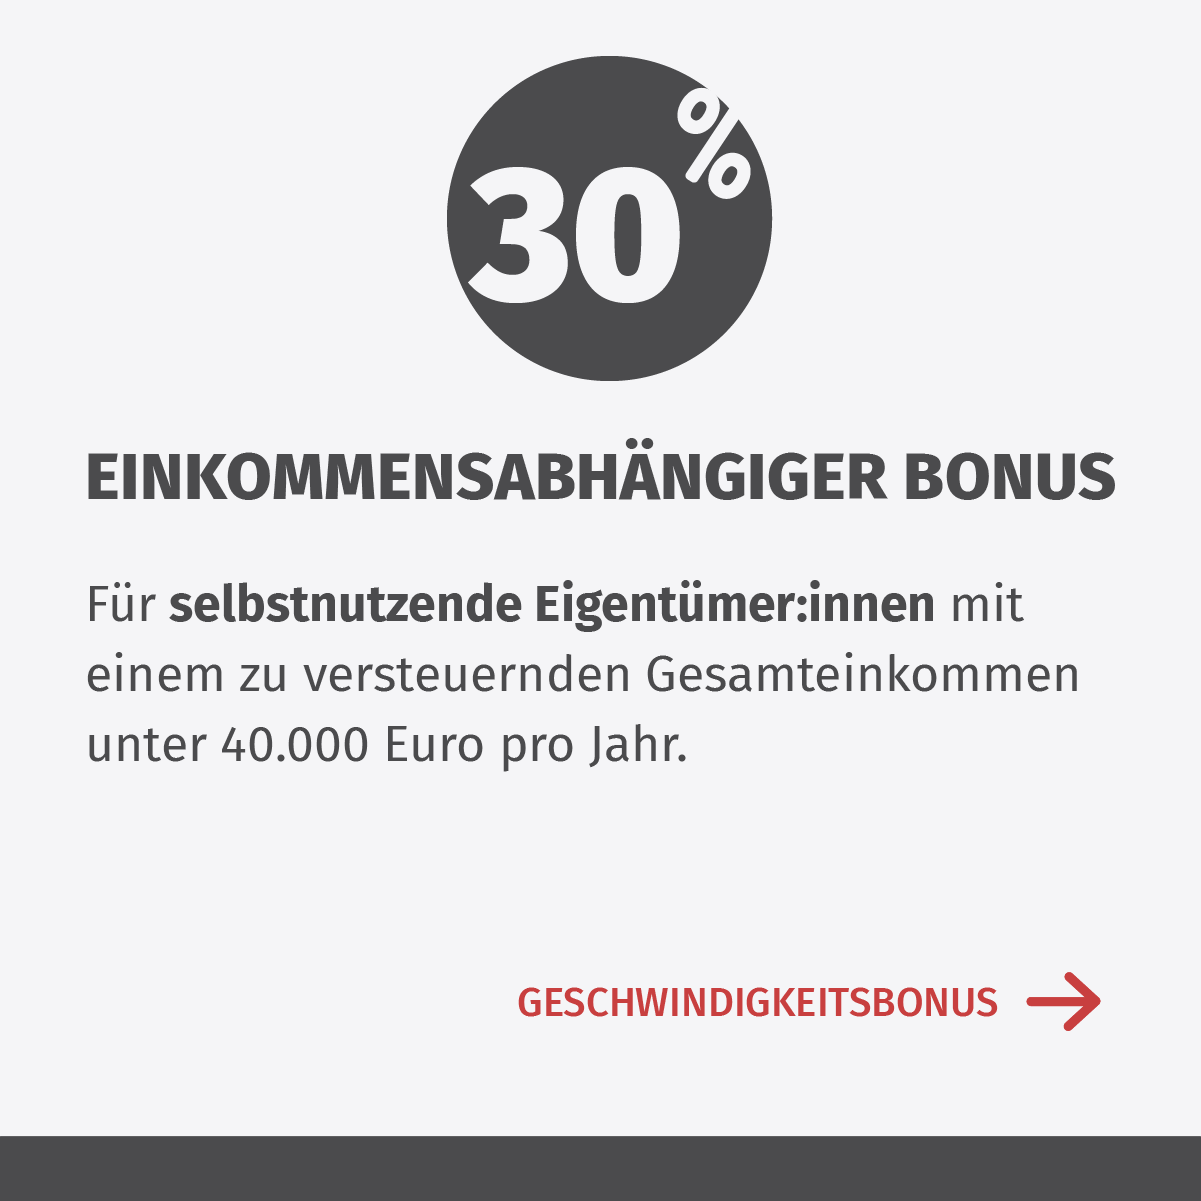 30% EINKOMMENSABHÄNGIGER BONUS, Für selbstnutzende Eigentümerinnen und  Eigentümer mit einem zu versteuernden Gesamteinkommen unter 40.000 Euro pro Jahr.